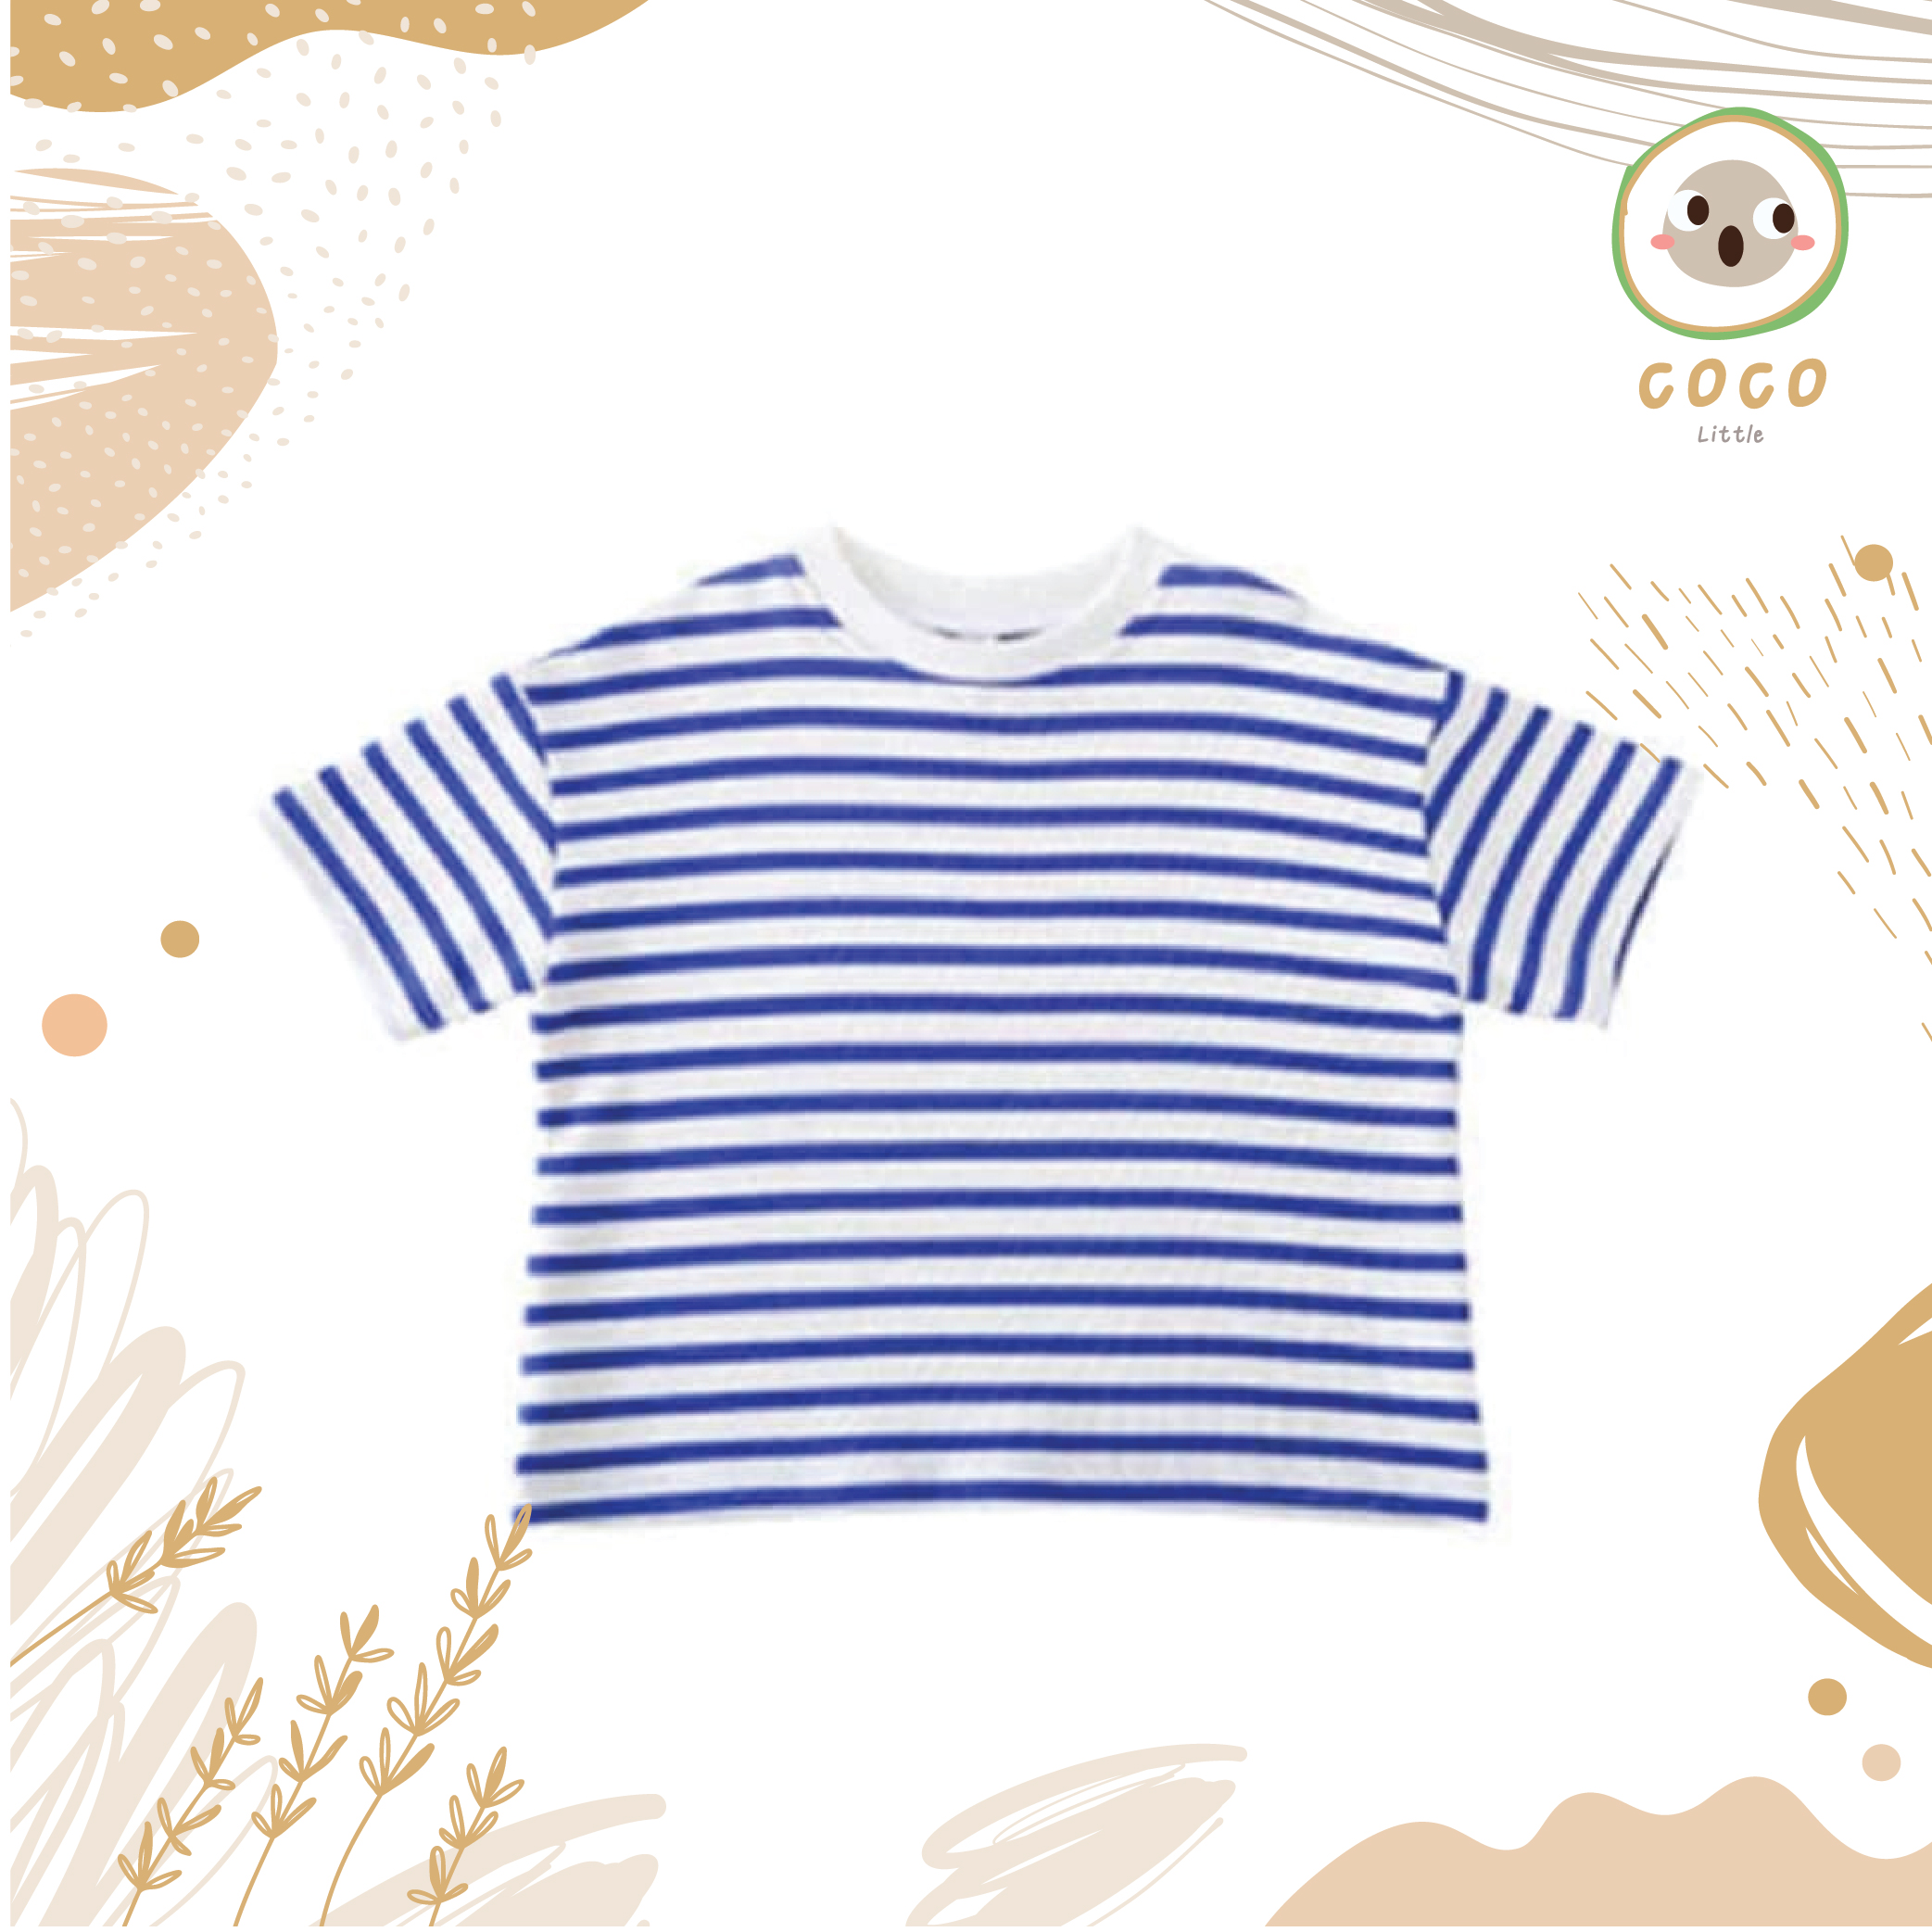 COCO BY PAPA เสื้อยืดคอกลม แขนสั้น ผ้าCotton100% เนื้อนิ่ม เสื้อเด็กสไตล์เกาหลี Stripe Top Shirt ไม่หนาใส่สบาย